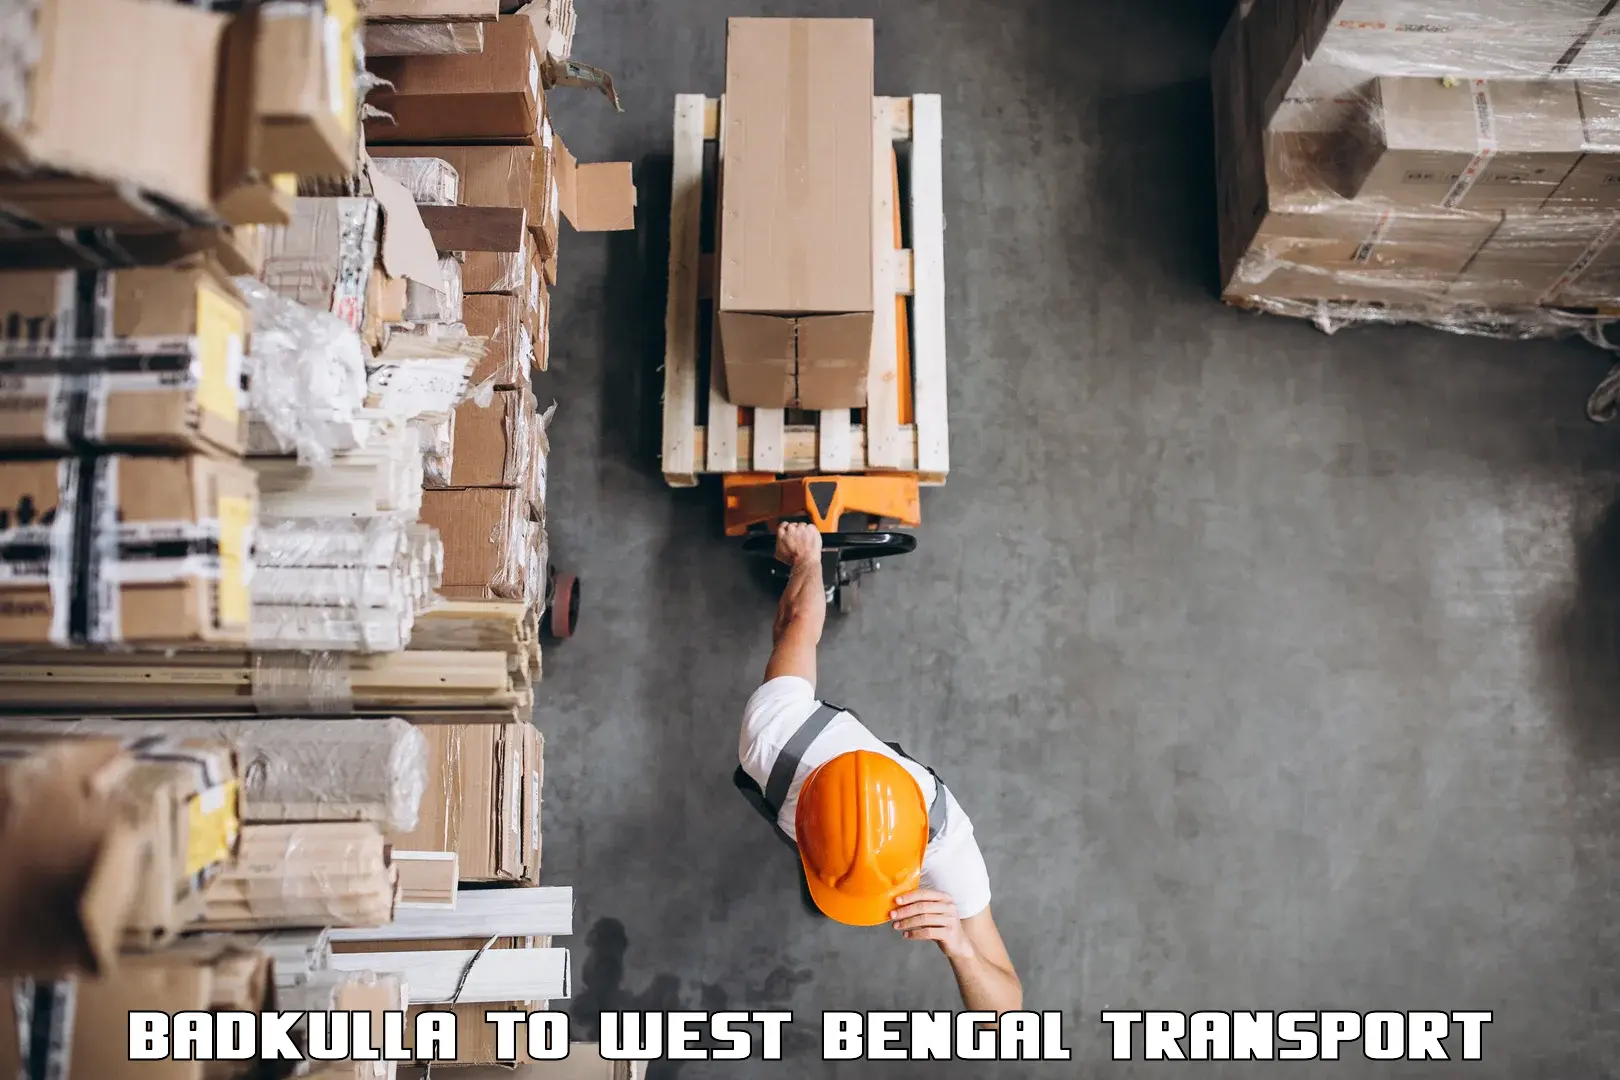 Furniture transport service Badkulla to Memari